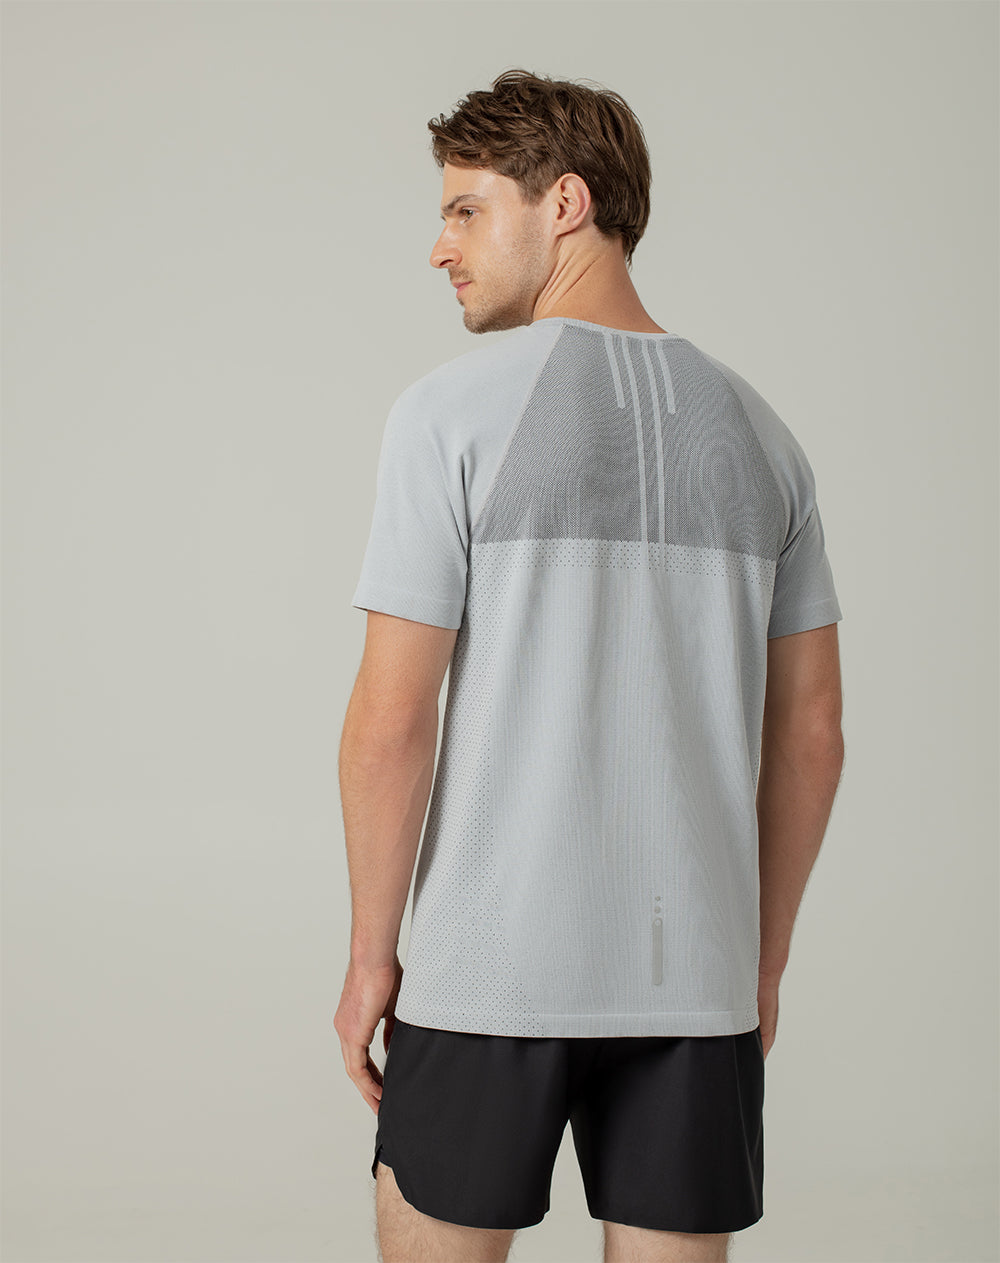 Camiseta slim fit manga corta gris